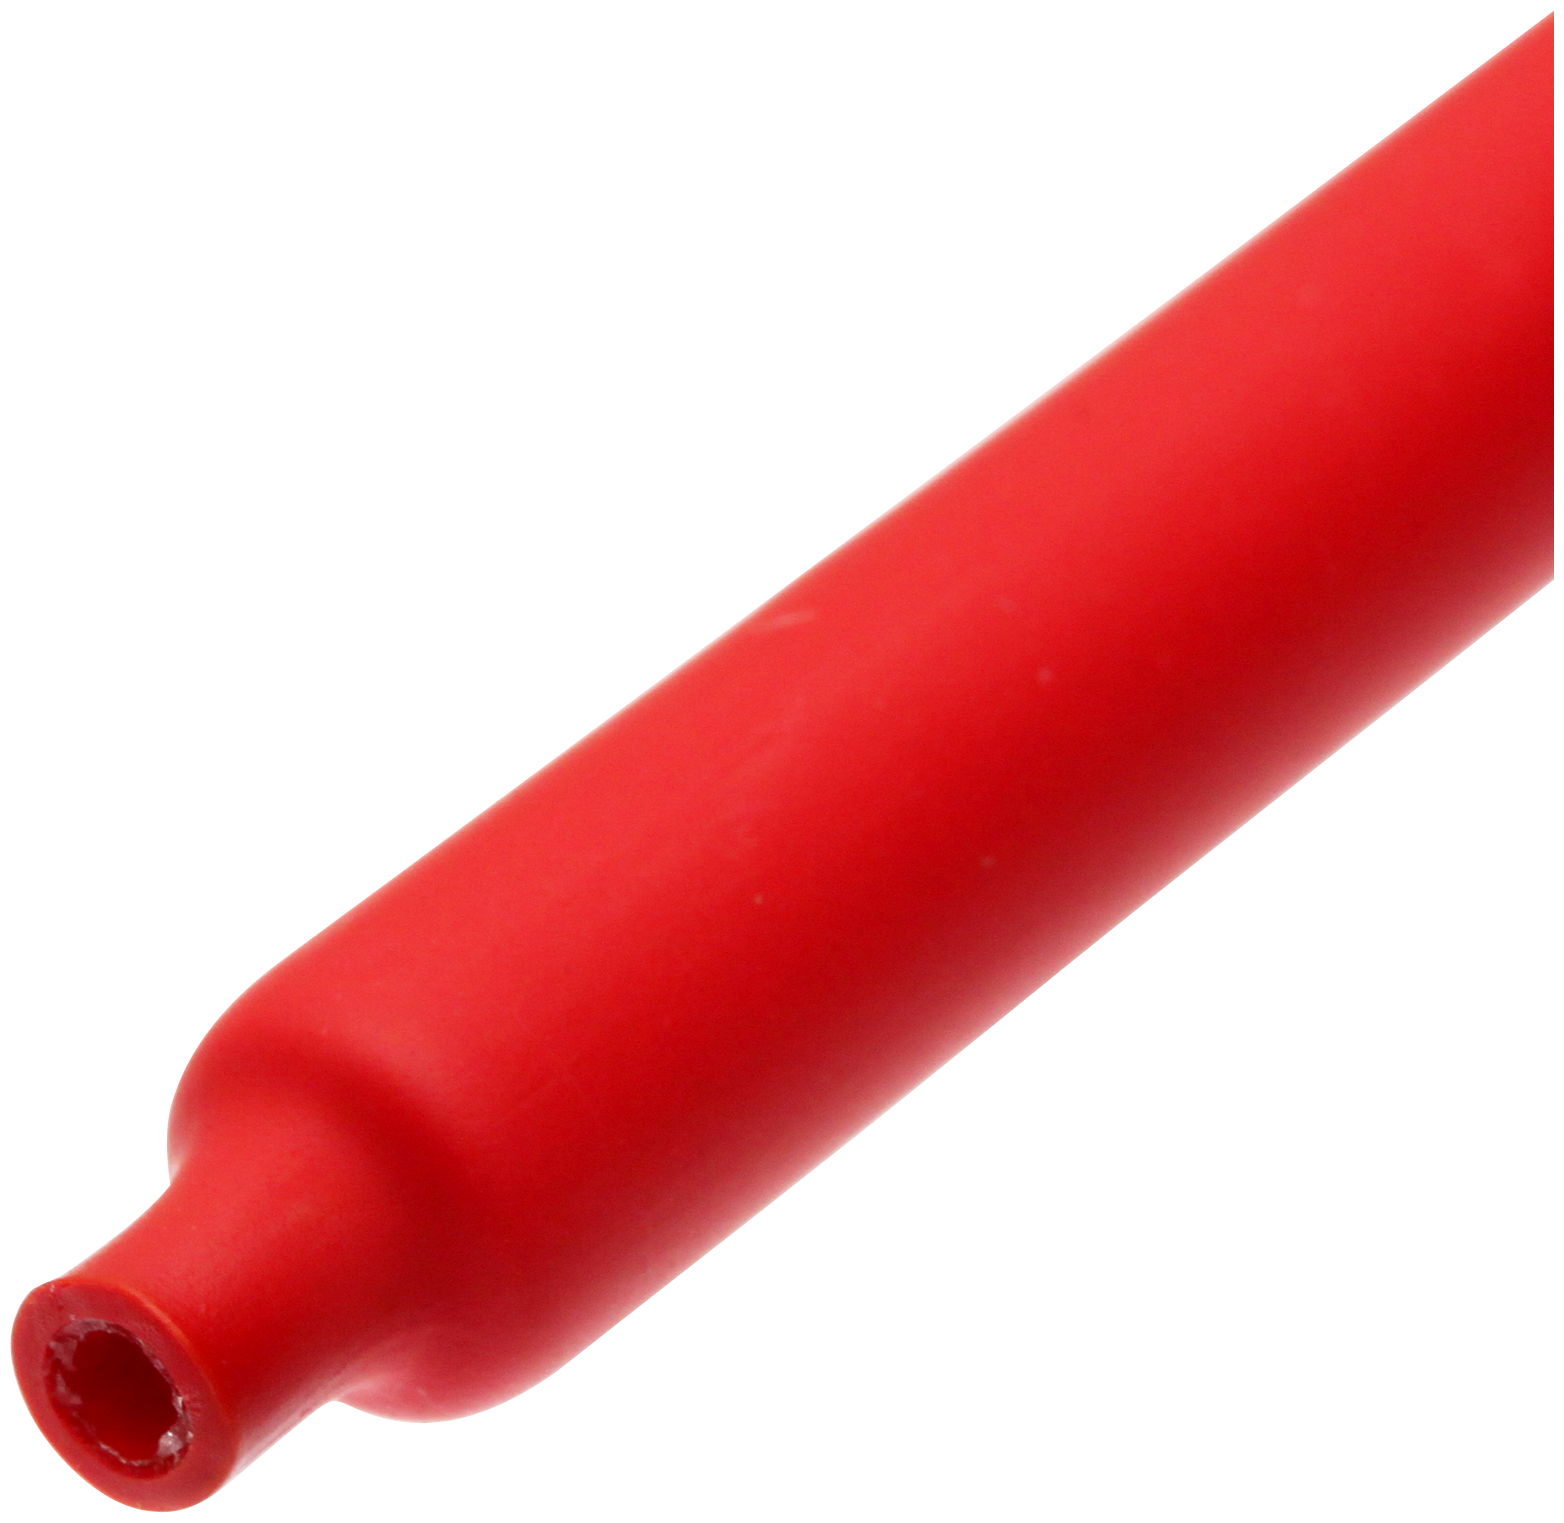 Термоусадочные красные клеевые трубки 3:1 с подавлением горения ТТК(3:1)-6/2 (красная) (КВТ) (10 шт. в упаковке)